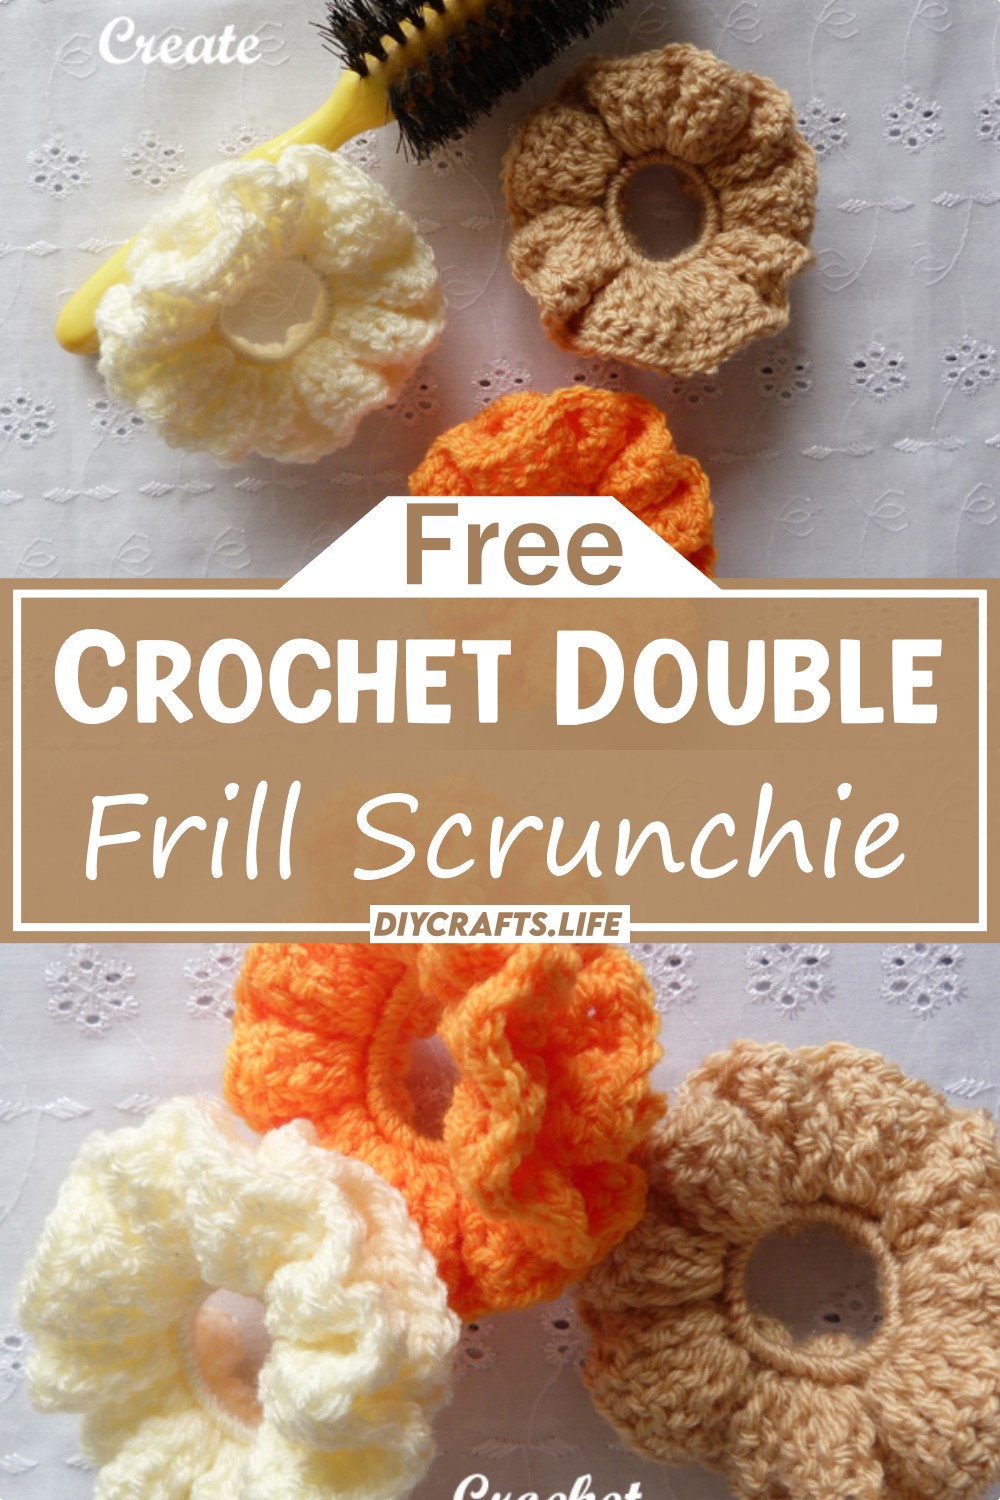 Crochet Double Frill Scrunchie